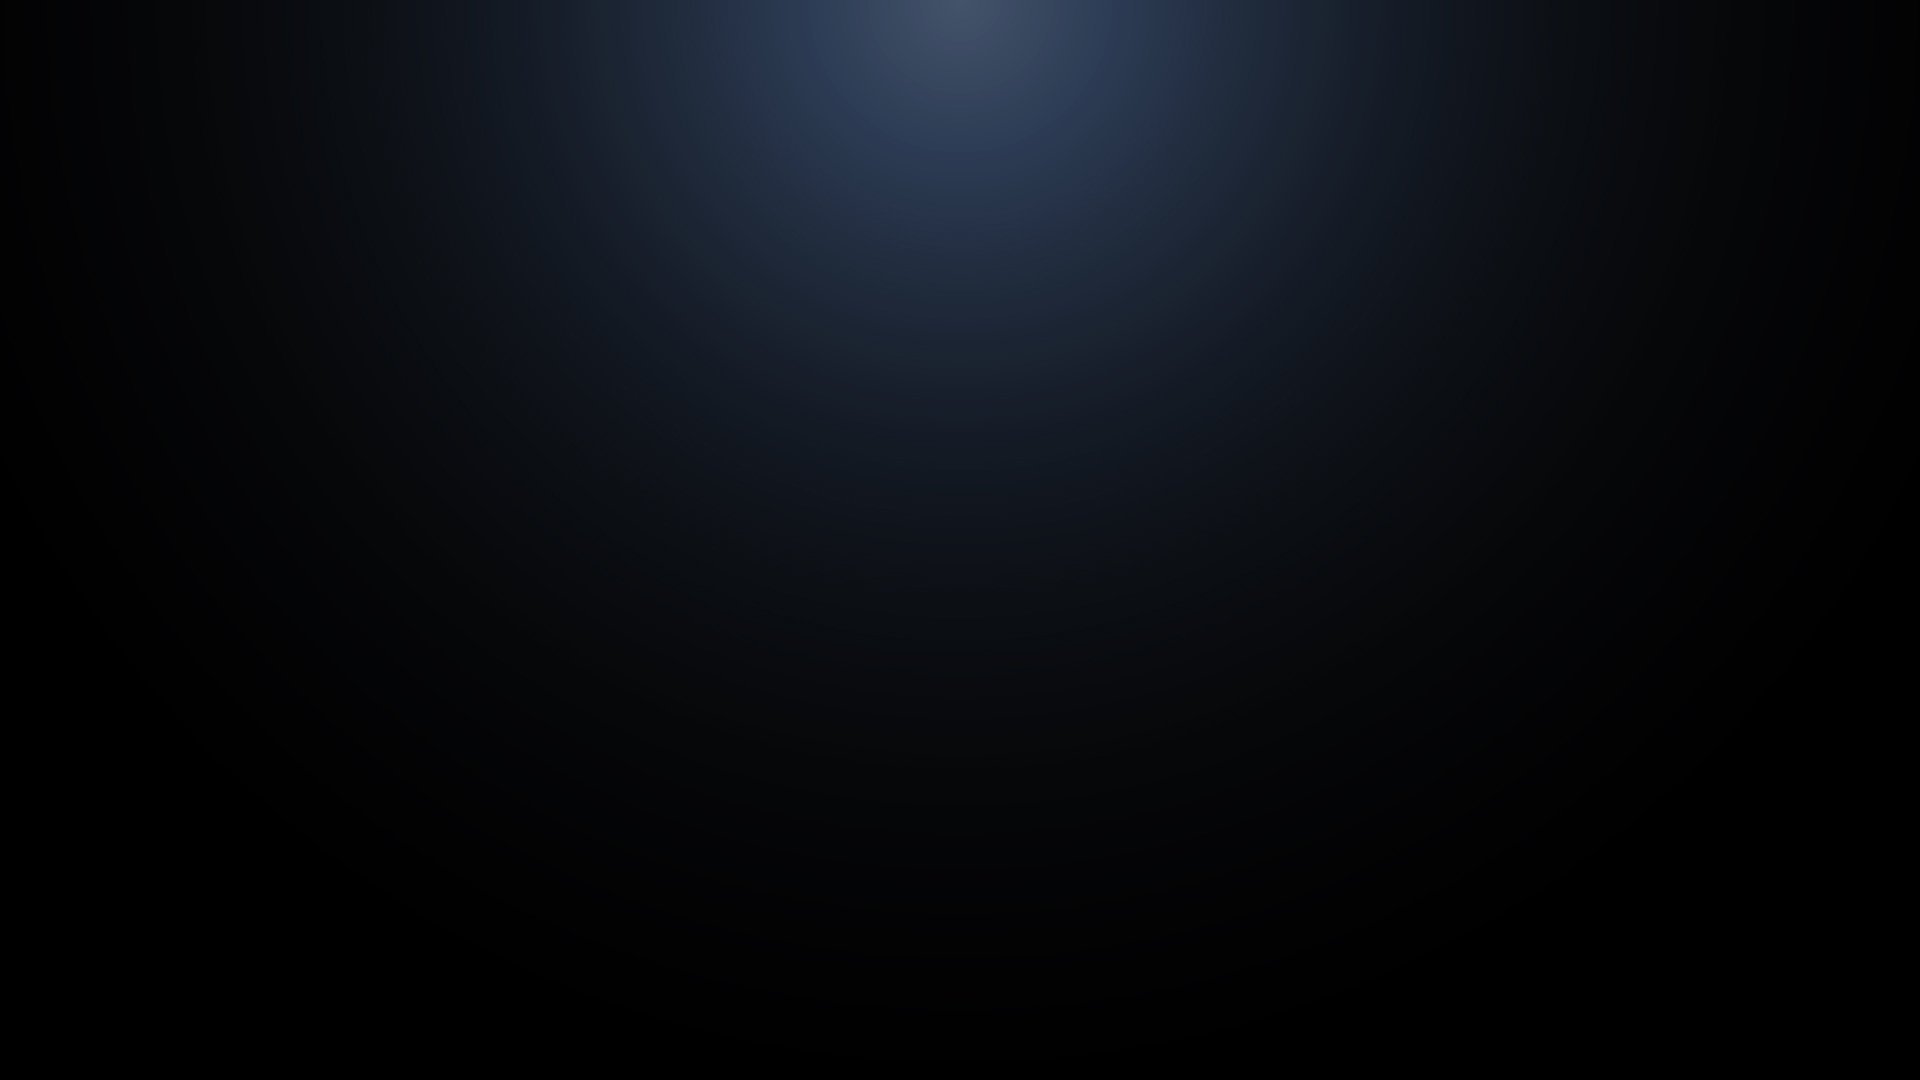 🔥 Free Download Black Light Background 1920x1080 For Your Desktop